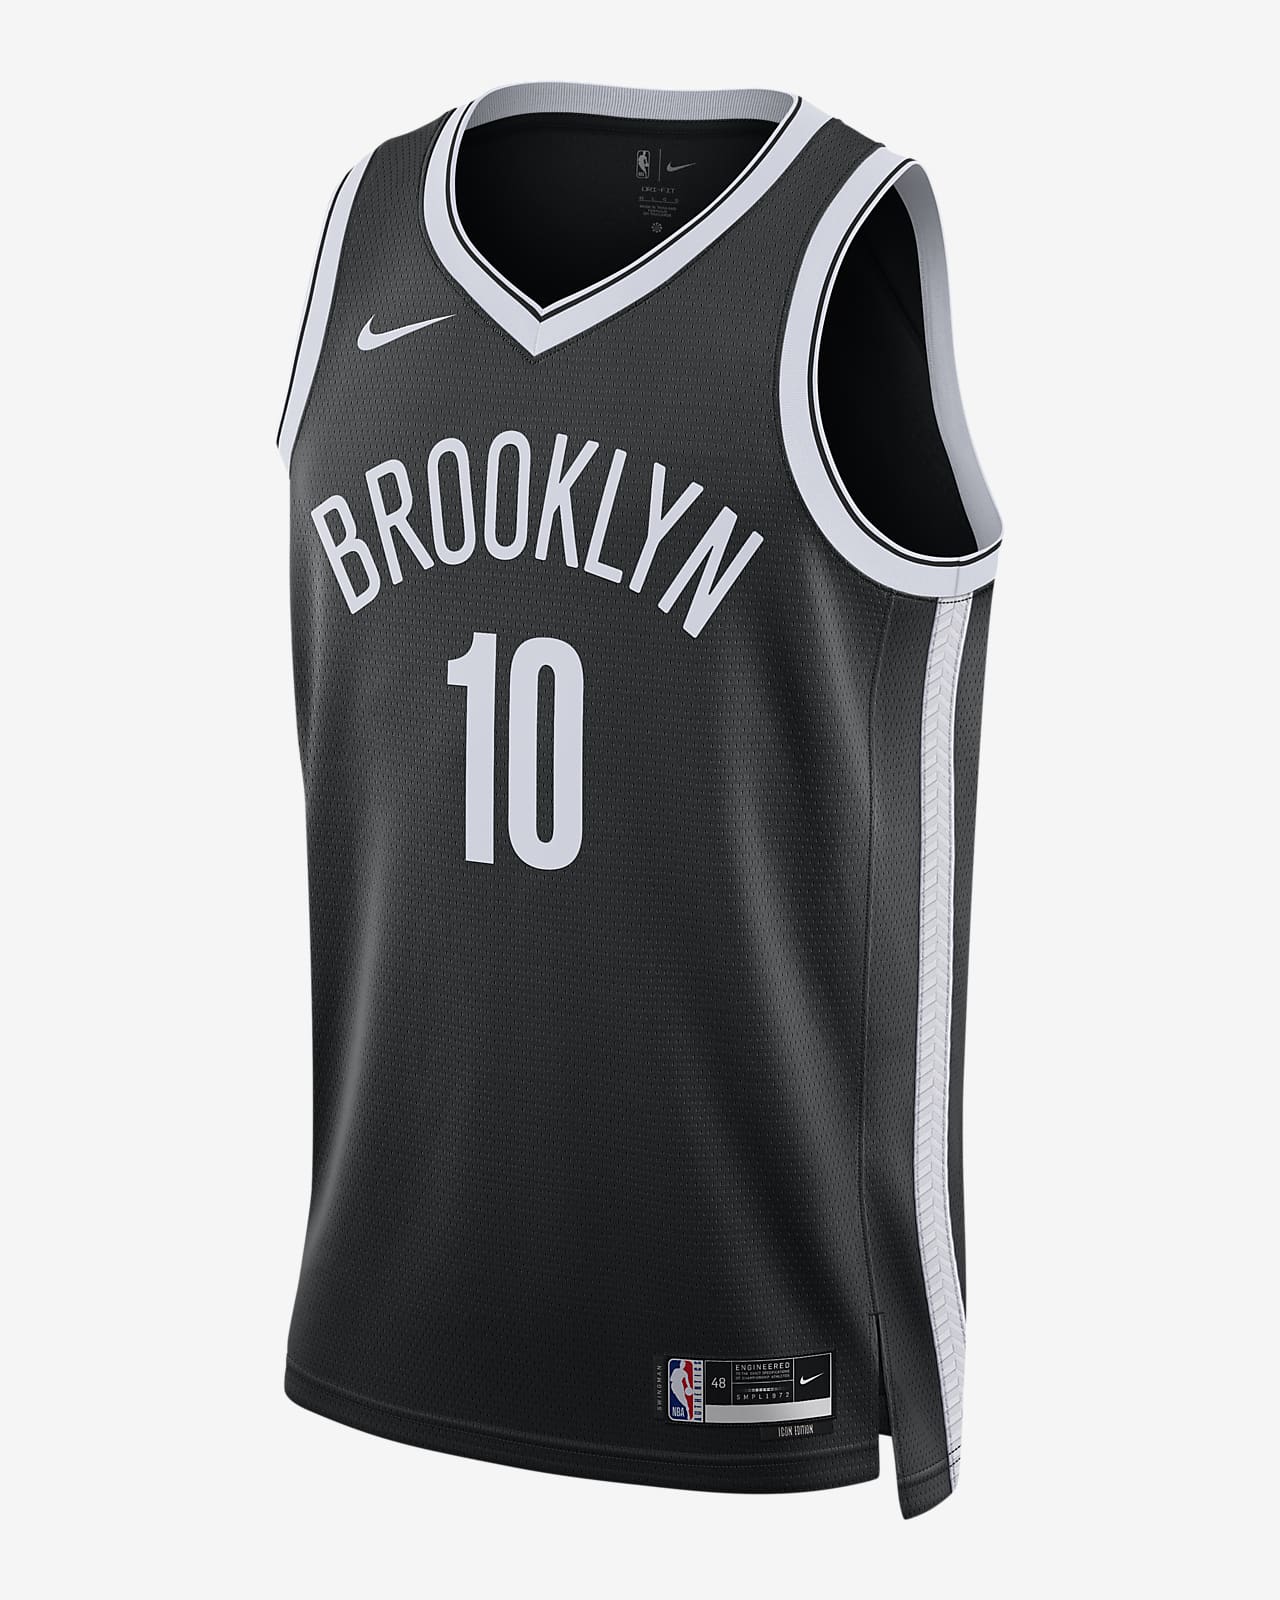 Custom Black White-Gray Double Side Sets Sportswear Basketball Jersey